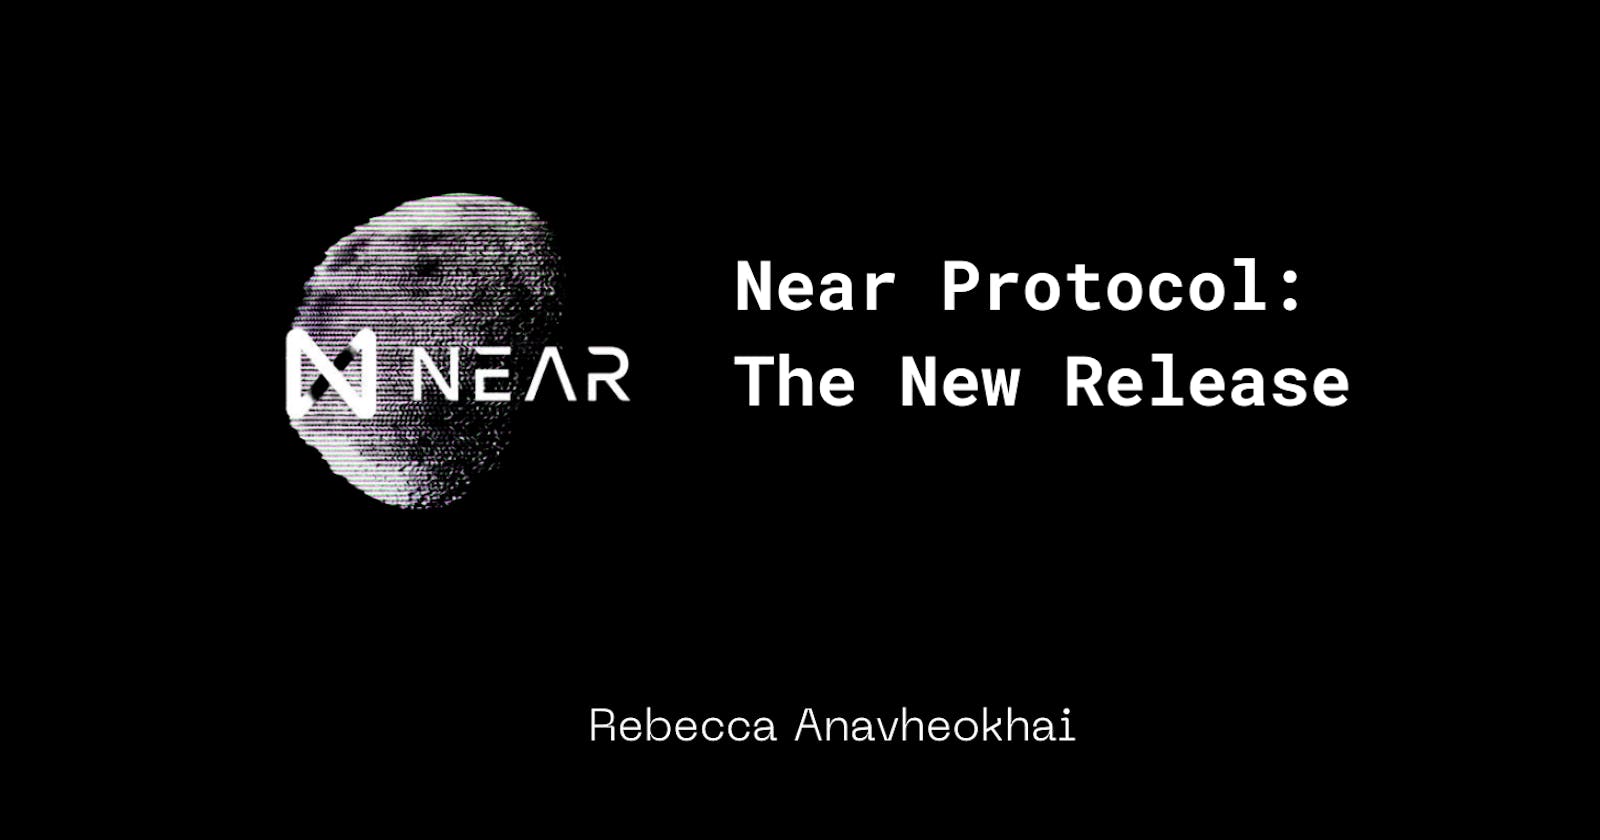 Near Protocol's New Release.